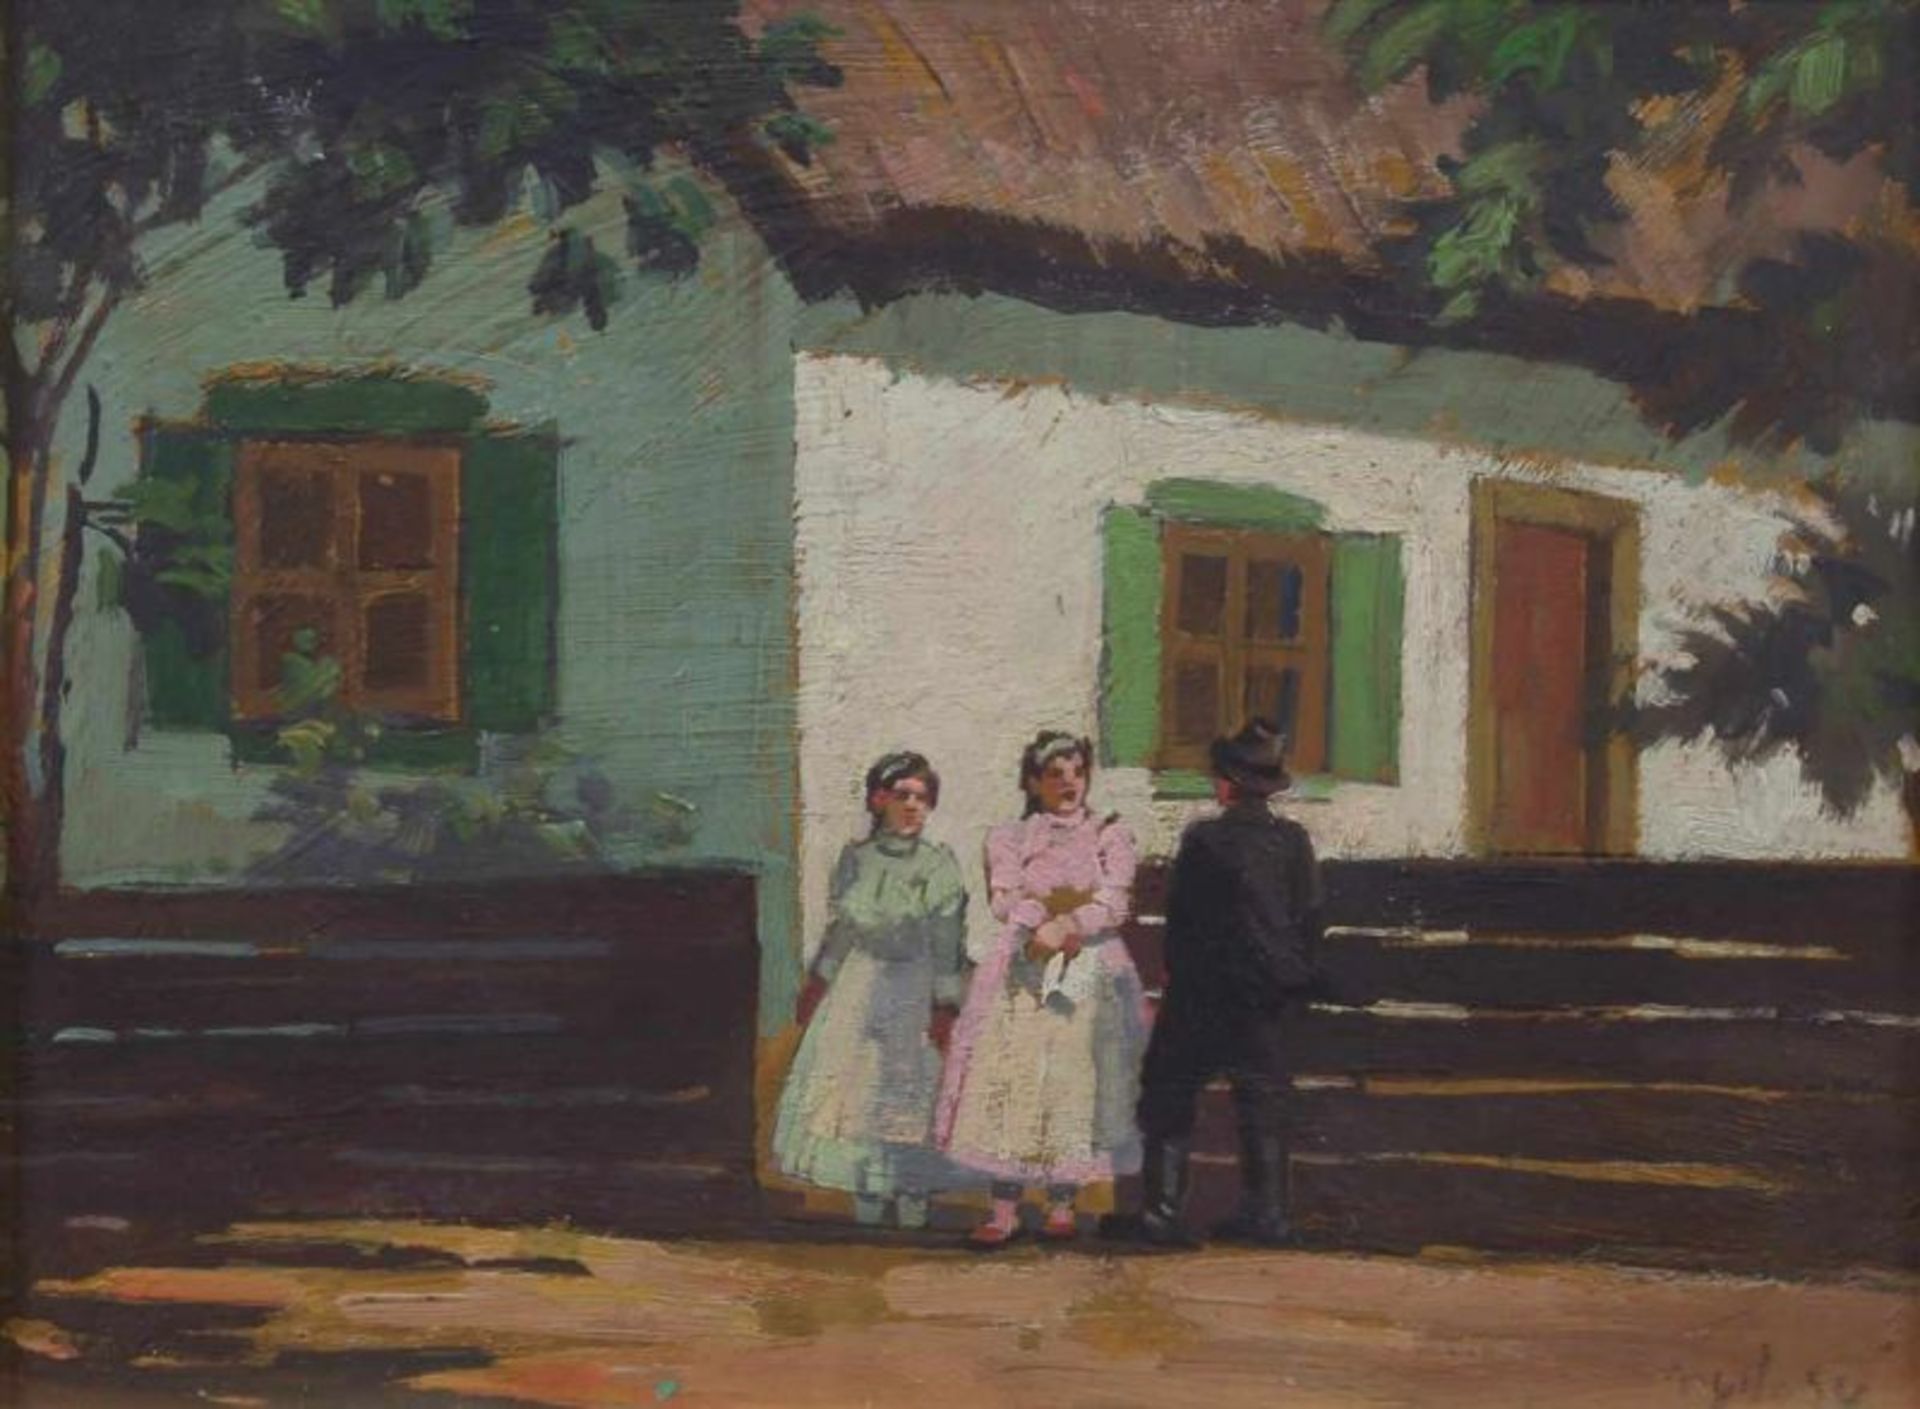 Ungarischer Maler (1. Viertel 20. Jh.), "Begegnung vor dem Bauernhof", Öl auf Karton, undeutlich